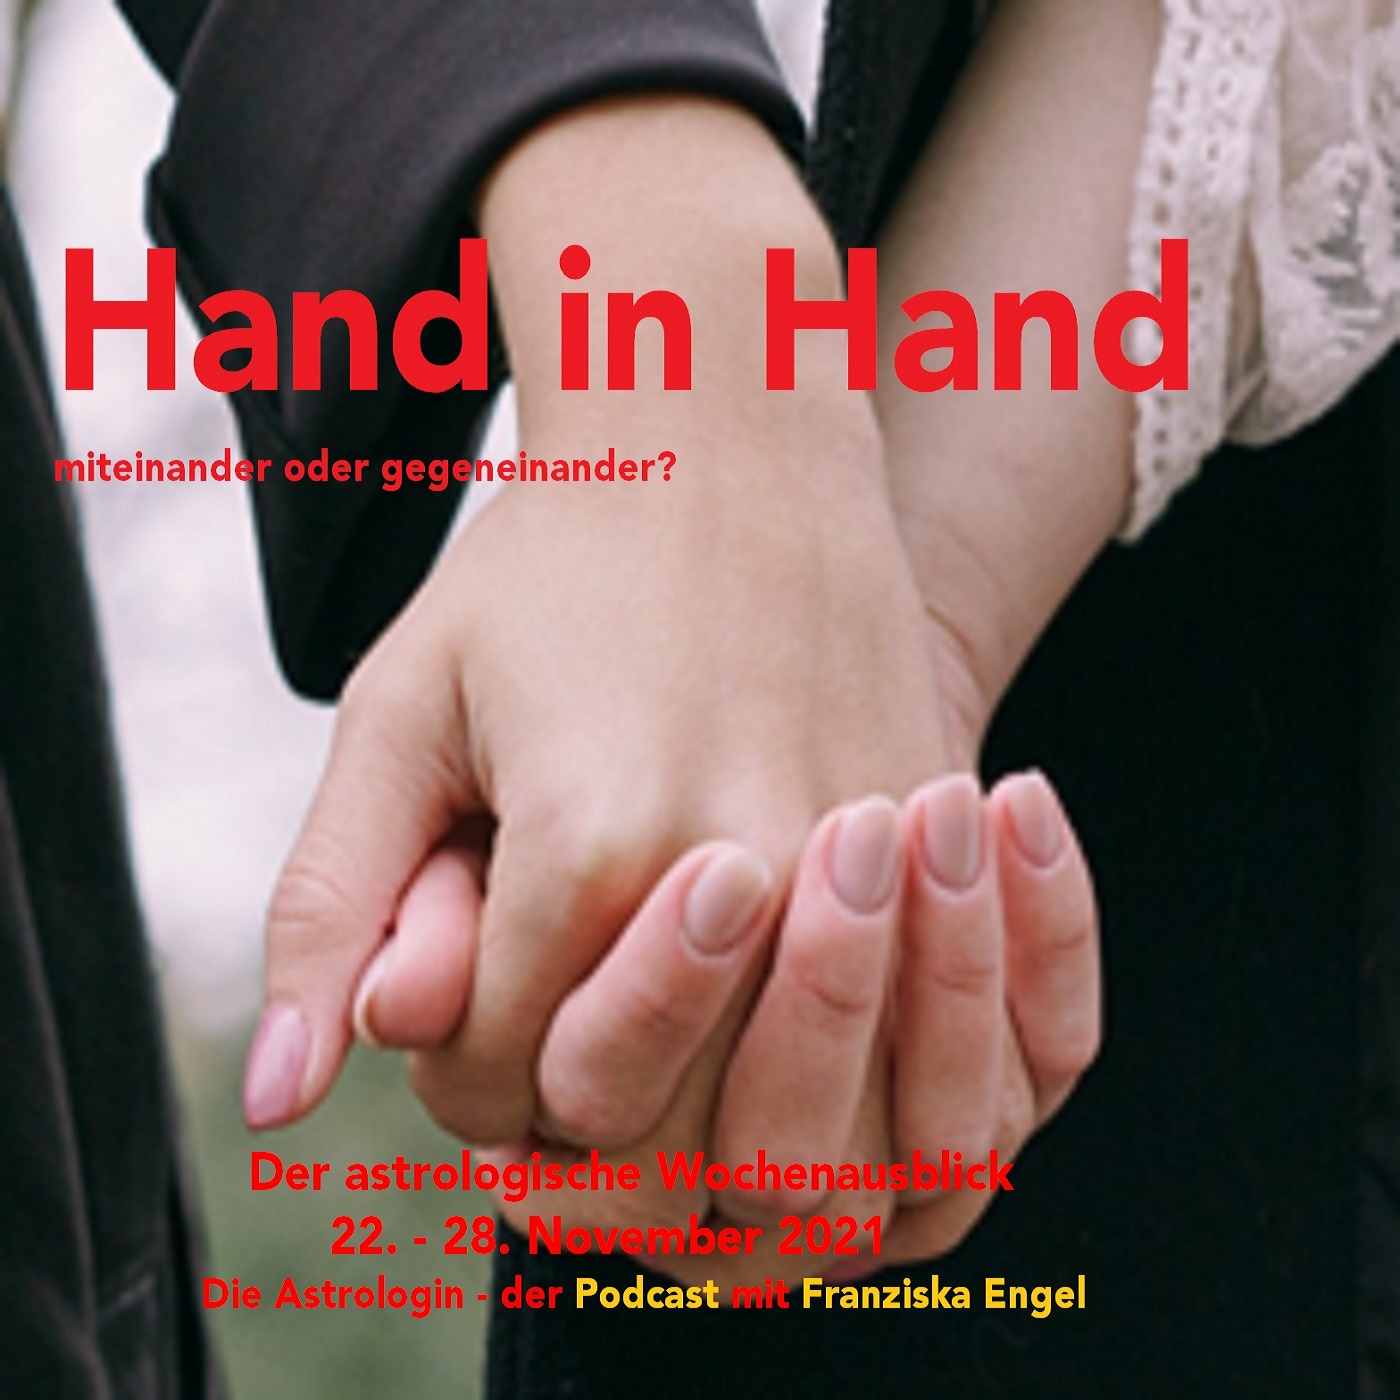 Hand in Hand - miteinander oder gegeneinander?